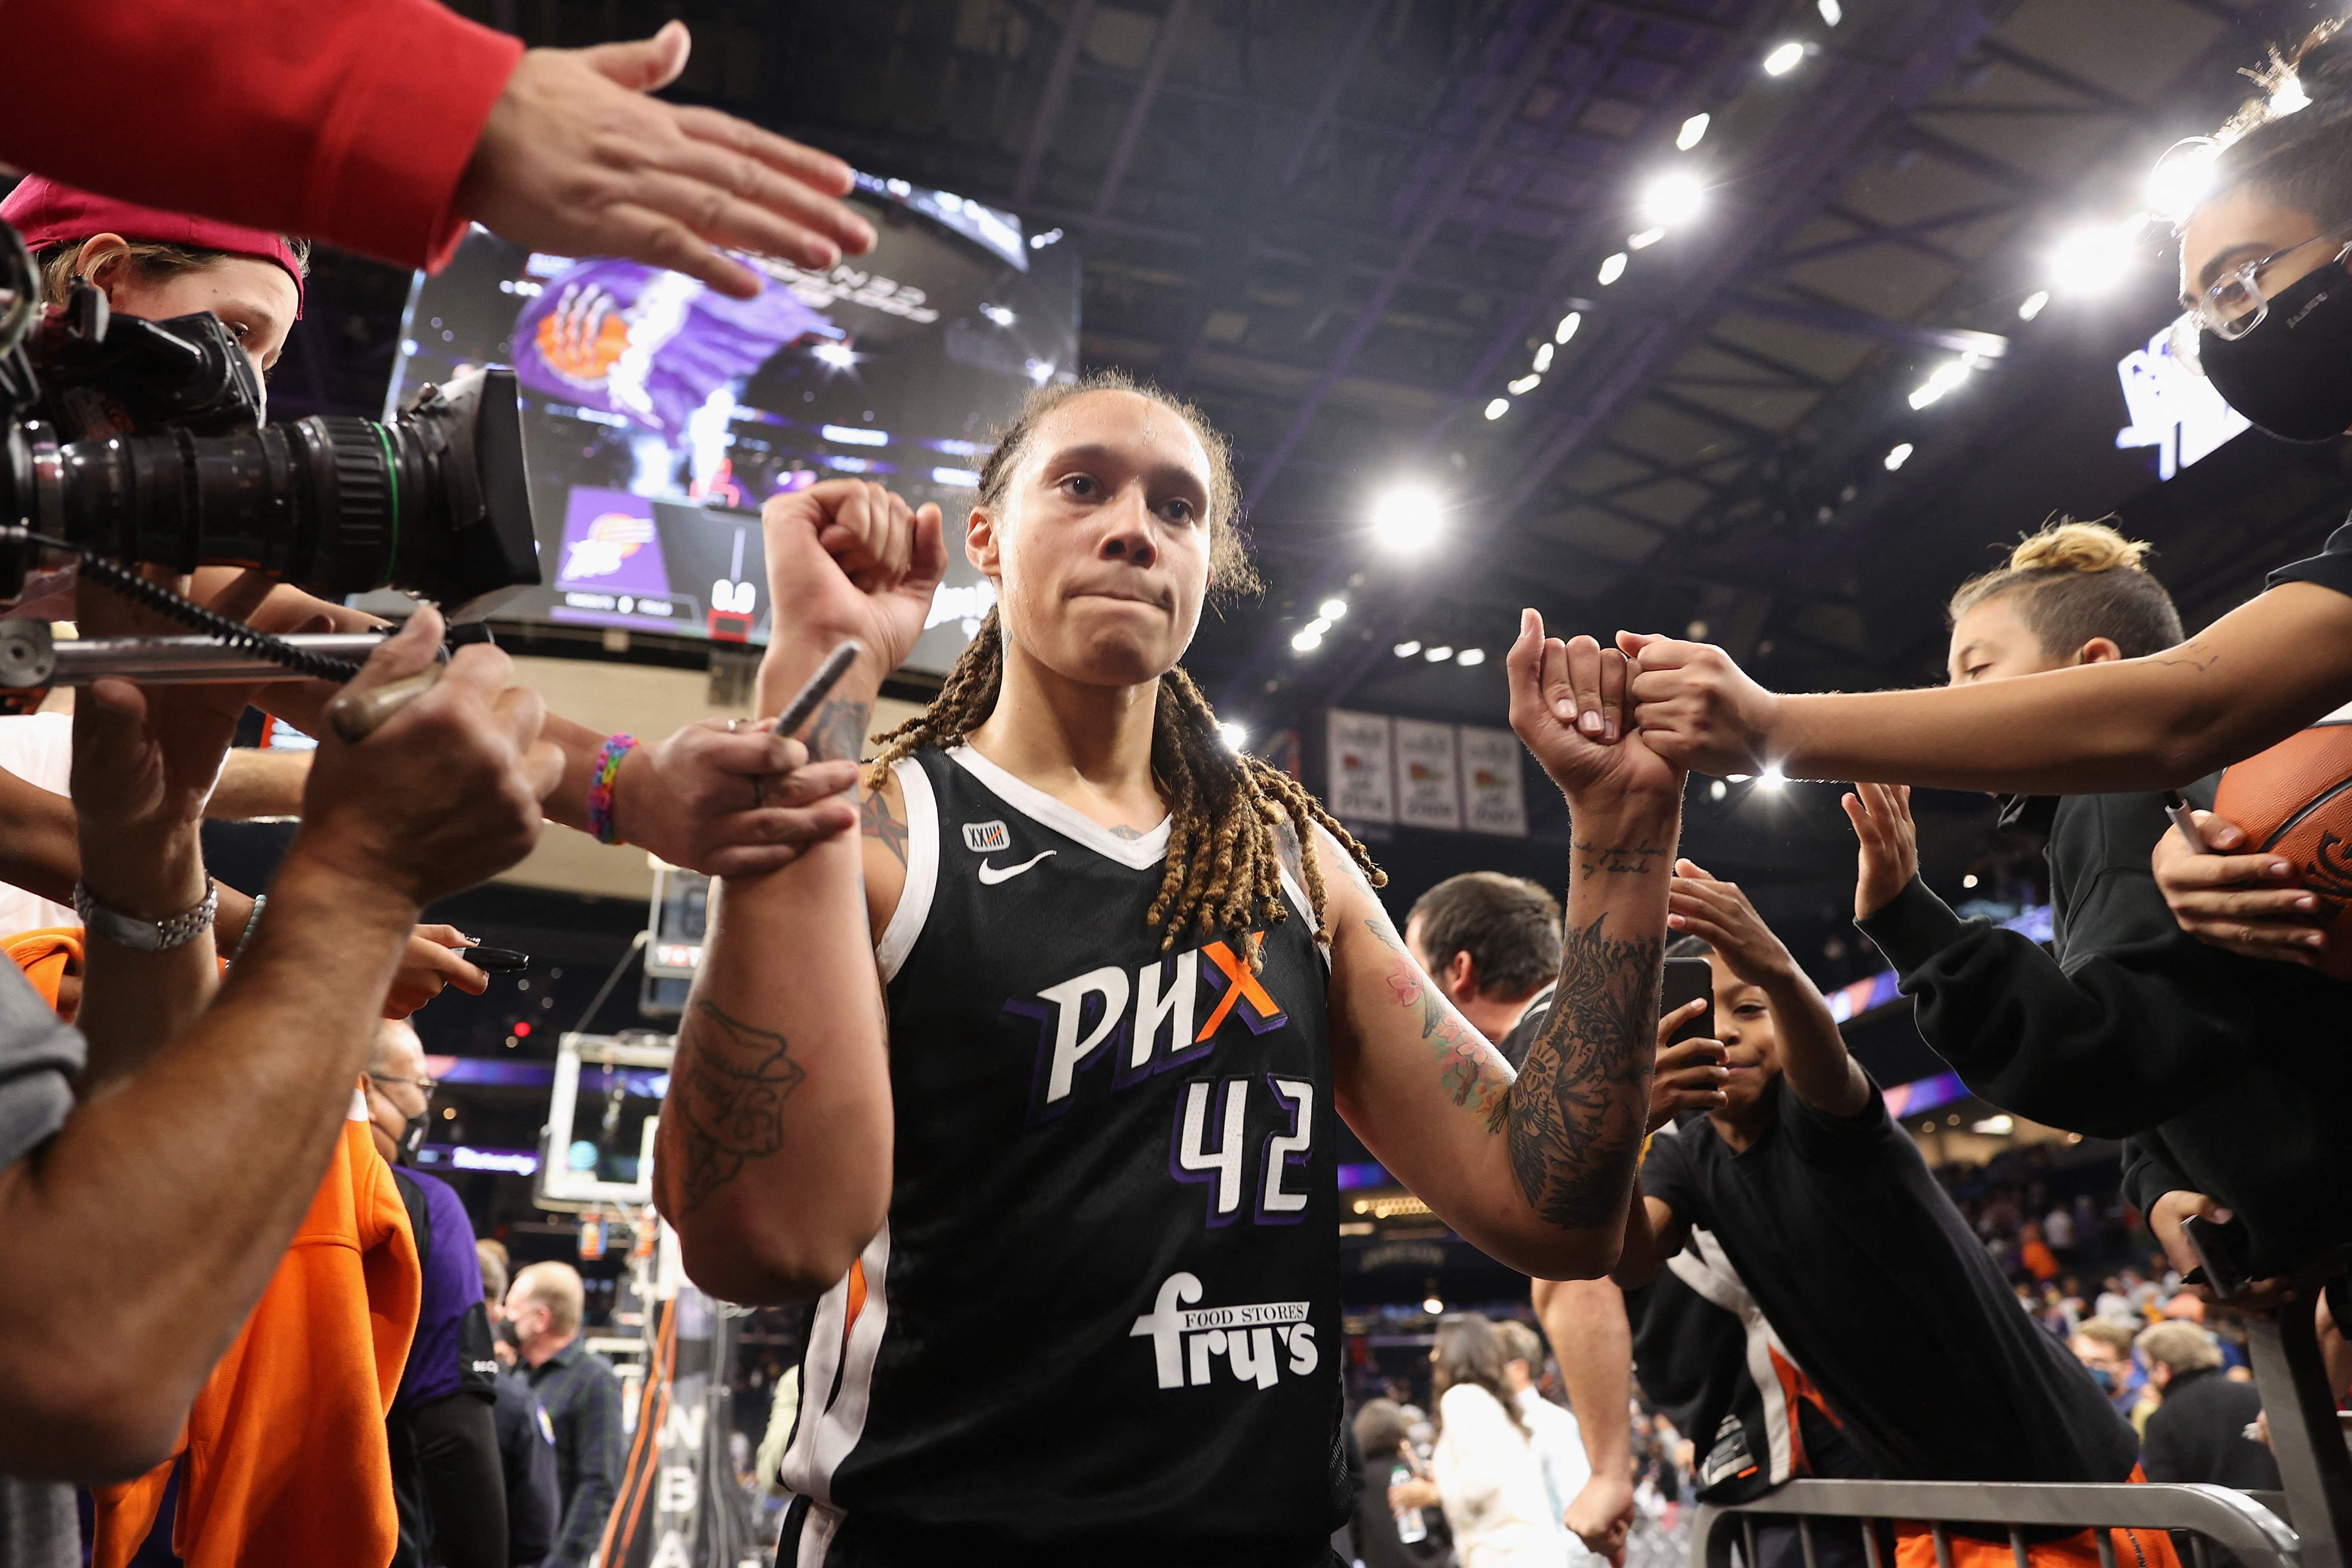 La jugadora de las Mercury de Phoenix Brittney Griner festeja con sus fans durante el juego dos de las finales de 2021 en la WNBA. (Foto Prensa Libre: AFP)